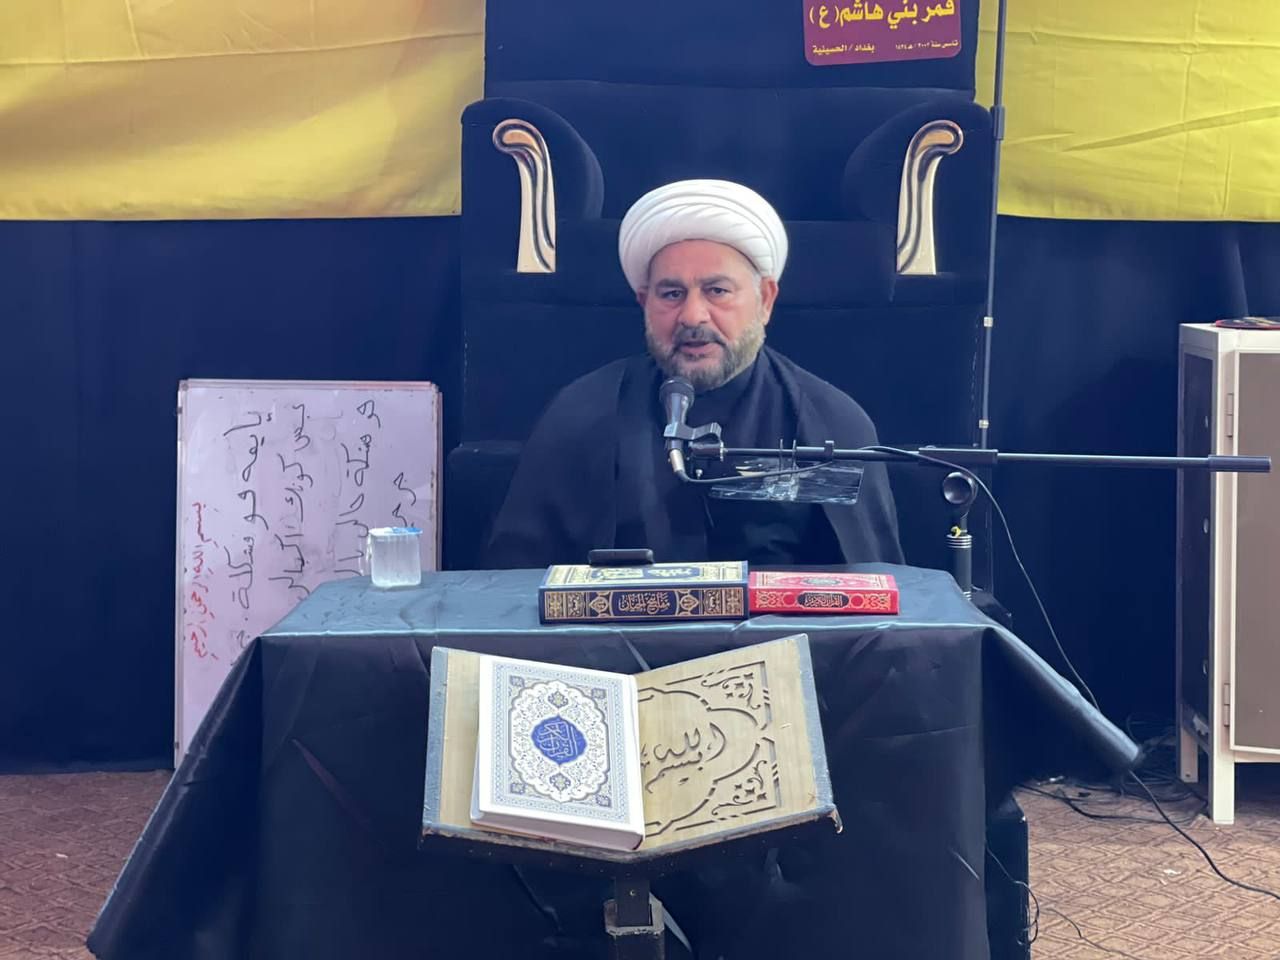 ضمن سلسلة ندواته المعرفية المَجمَع العلميّ يقيم ندوة قرآنية في بغداد